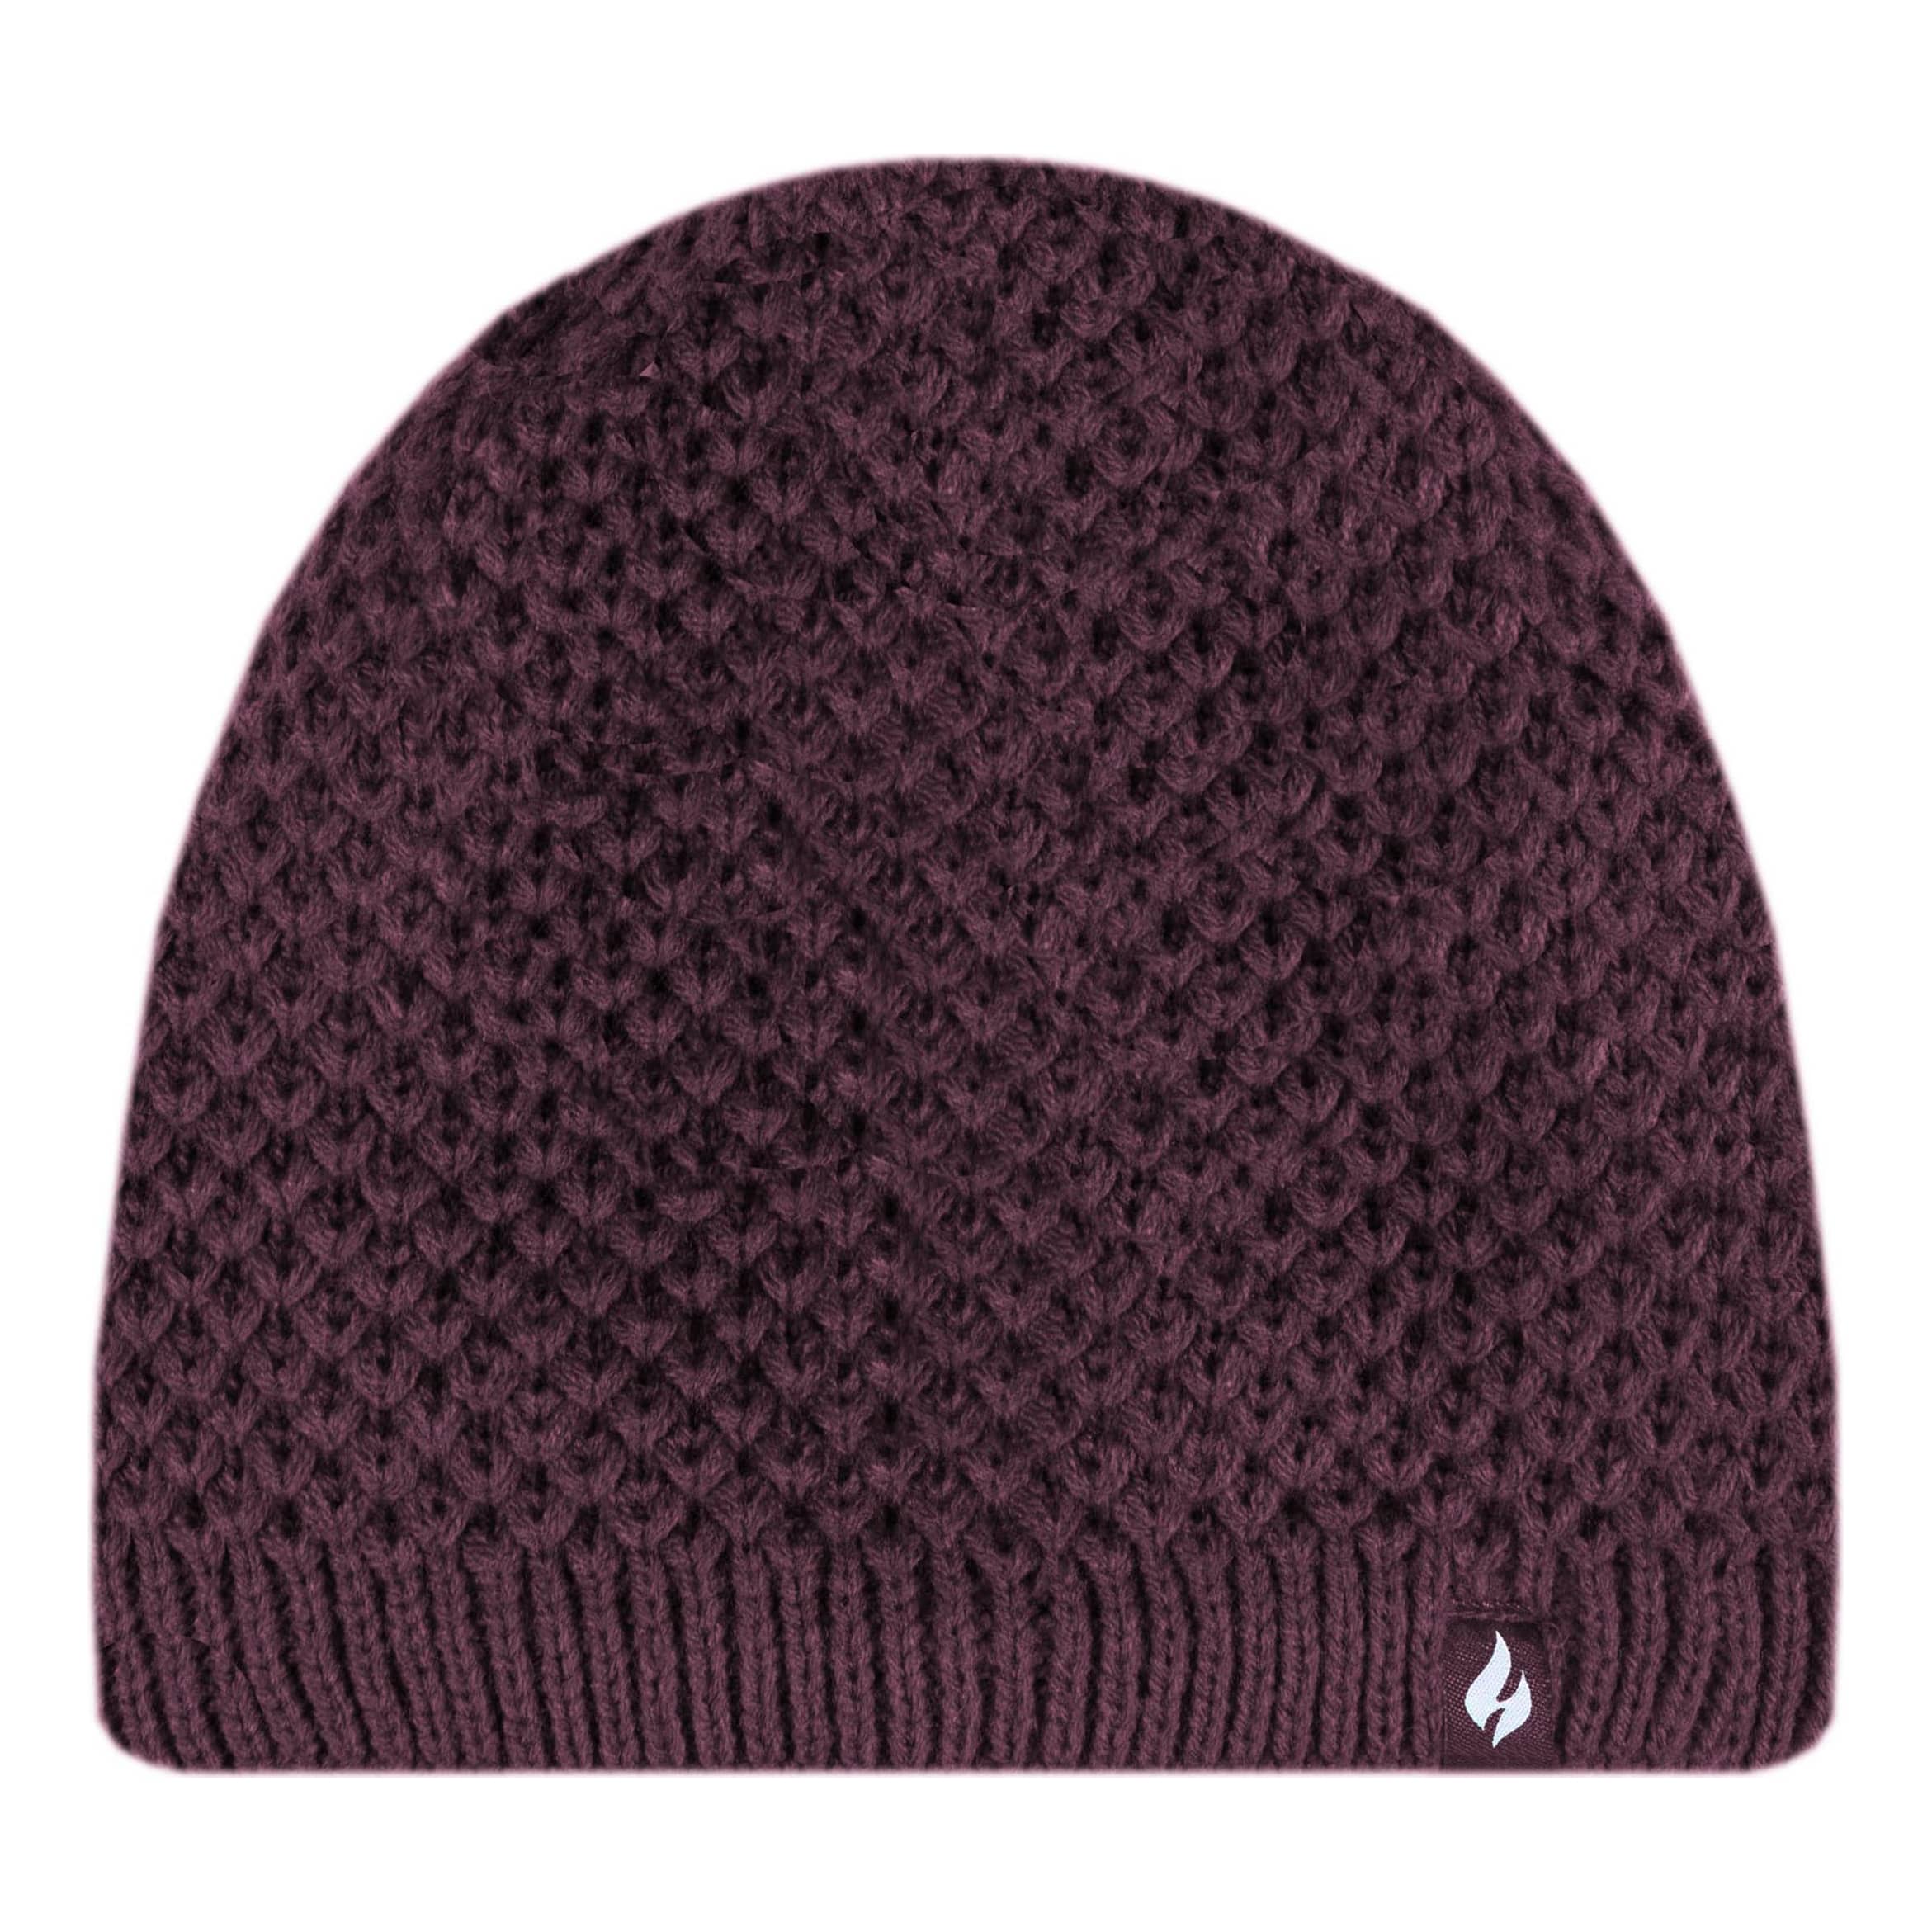 Heat Holders® Women’s Nora Seed Knit Hat - Deep Wine